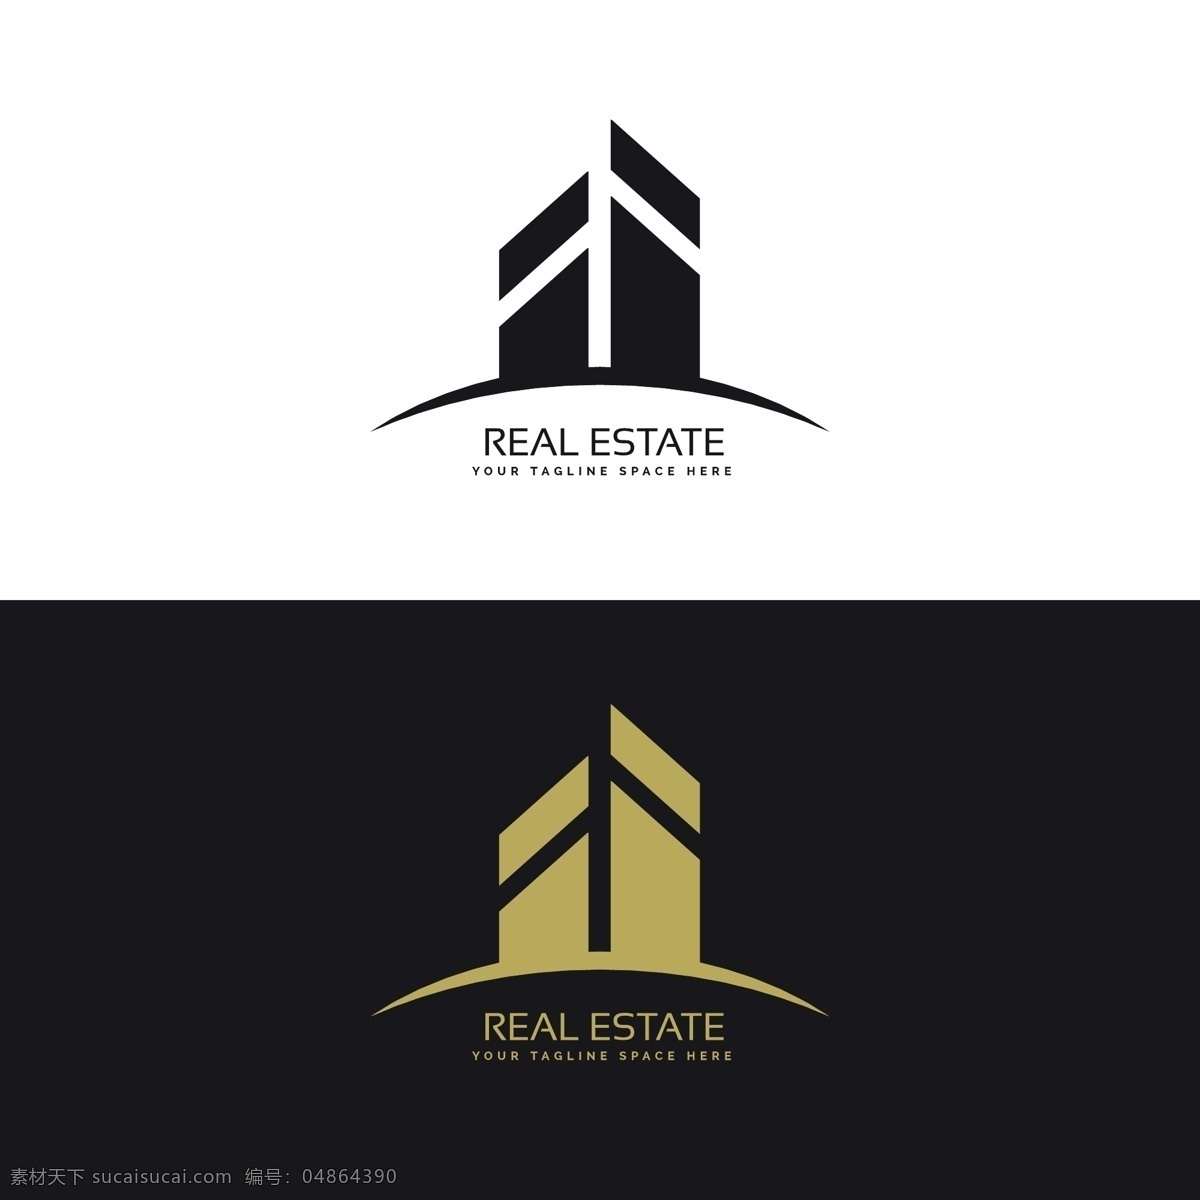 房地产 标志 logo 模板 扁平风格 简约 企业商标 logo模板